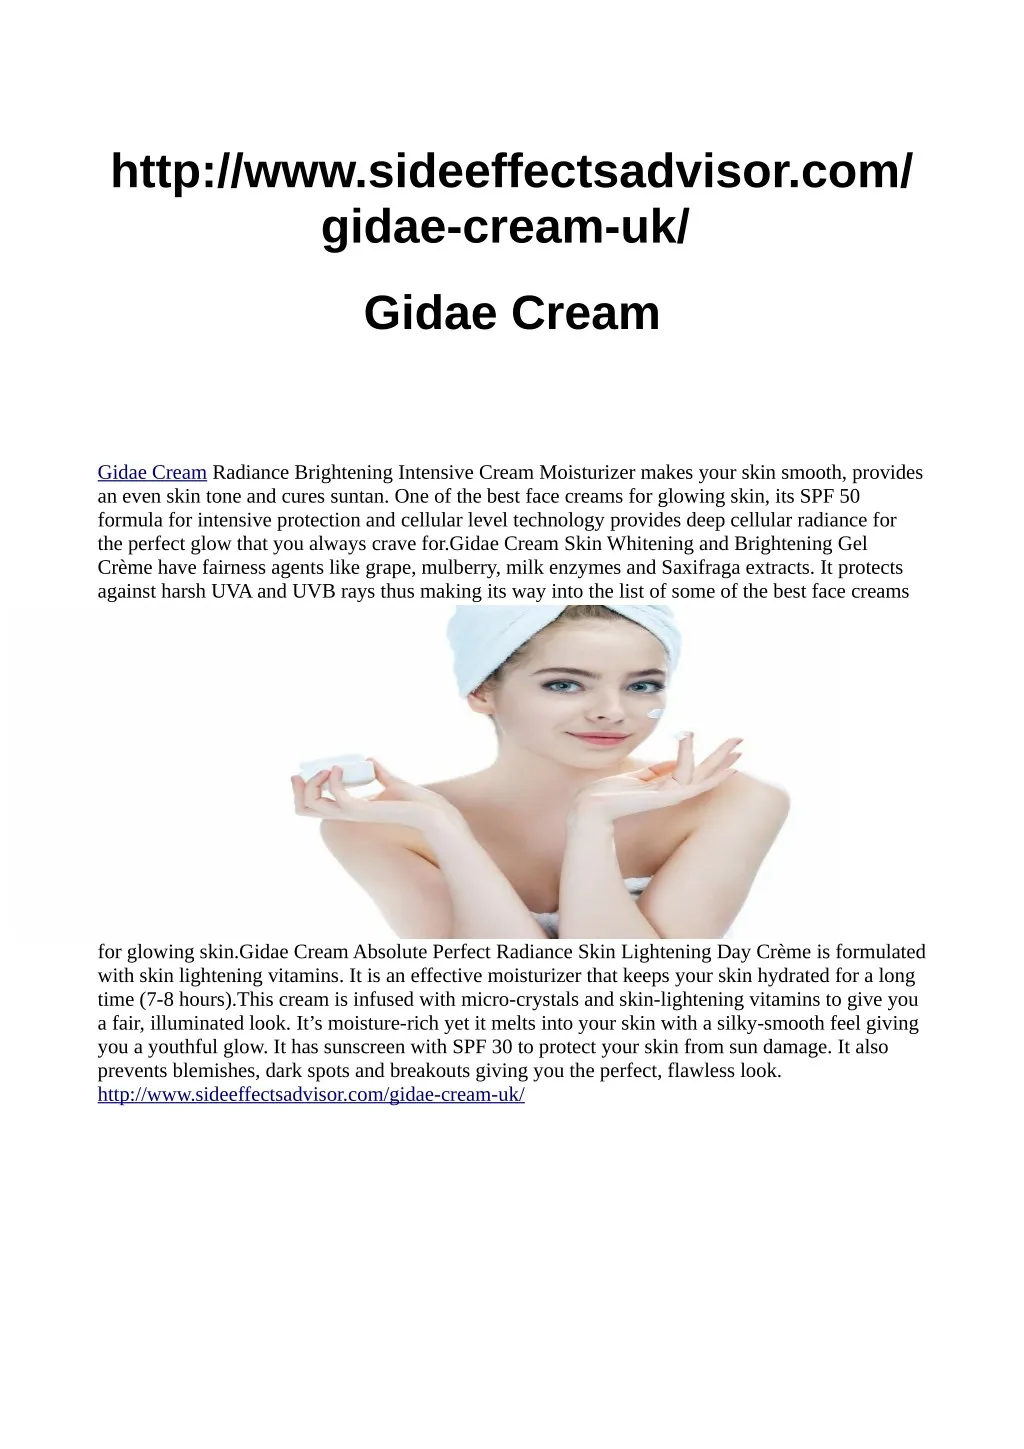 http www sideeffectsadvisor com gidae cream uk